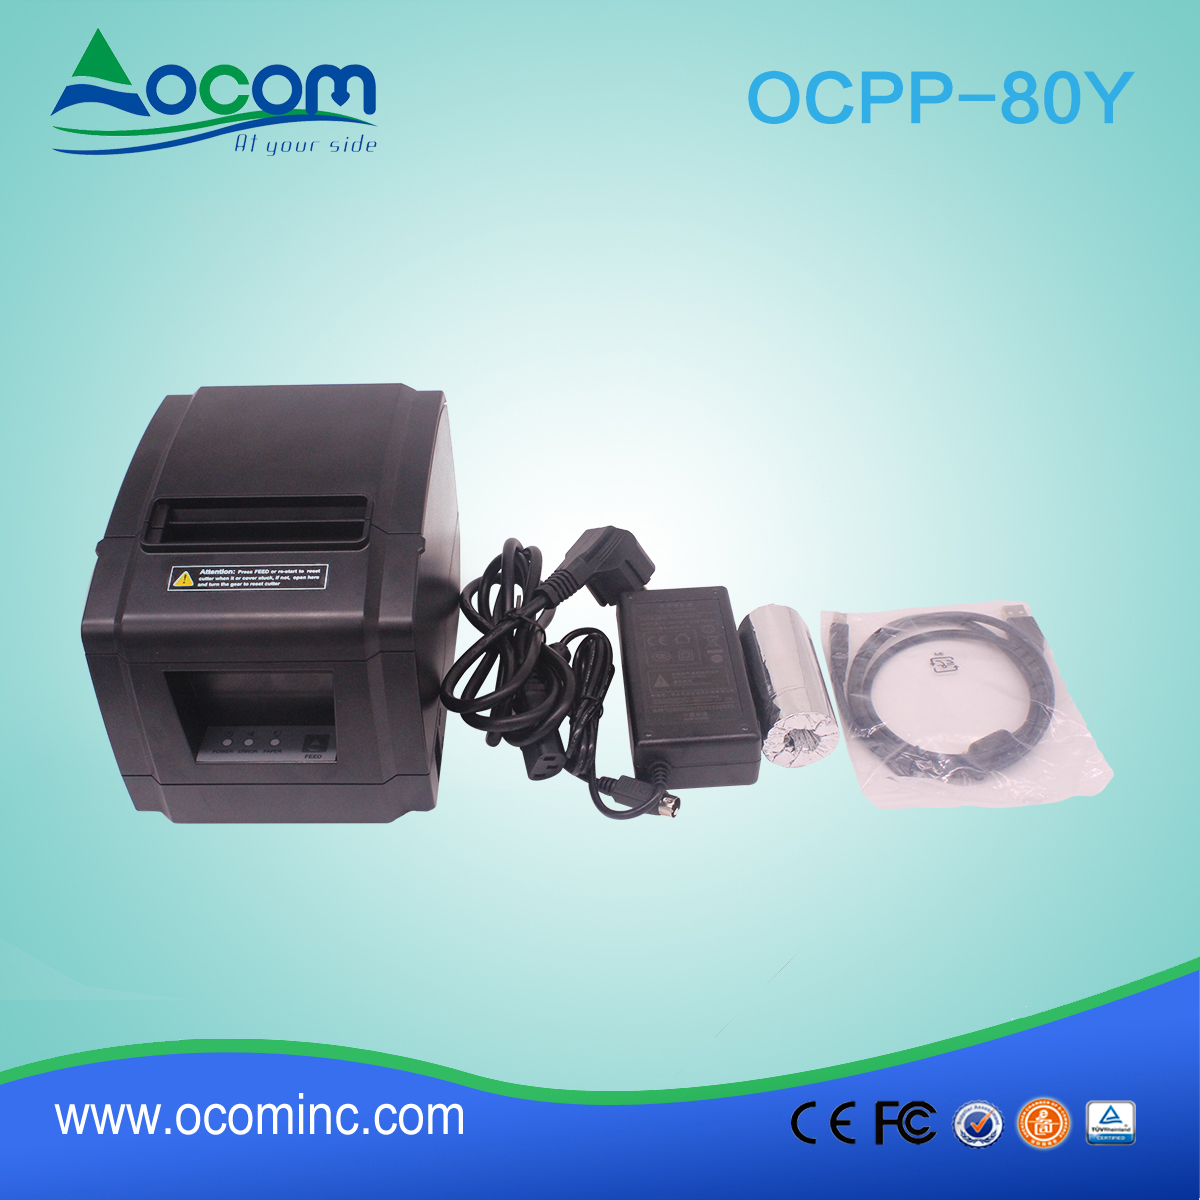 La impresora de recibos POS OCPP-88A-China de 80 mm está en promoción